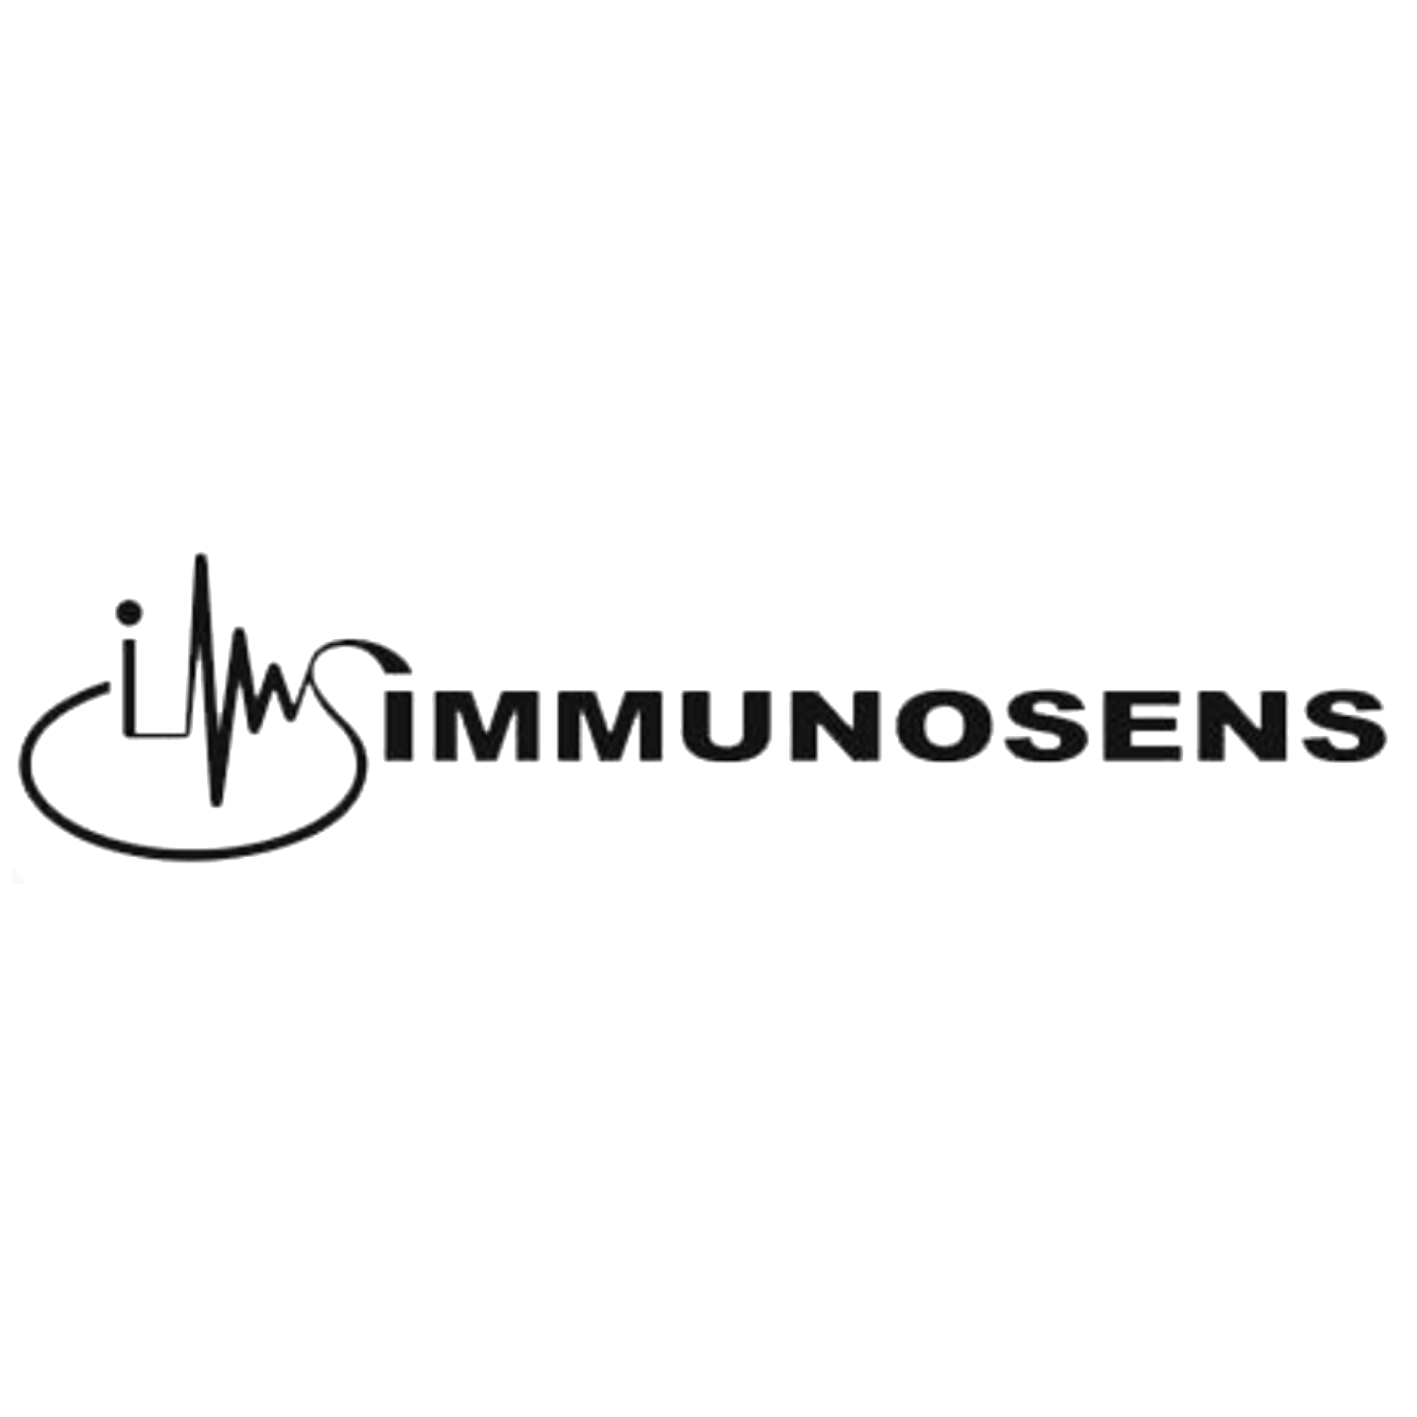 immunosens Co., Ltd.